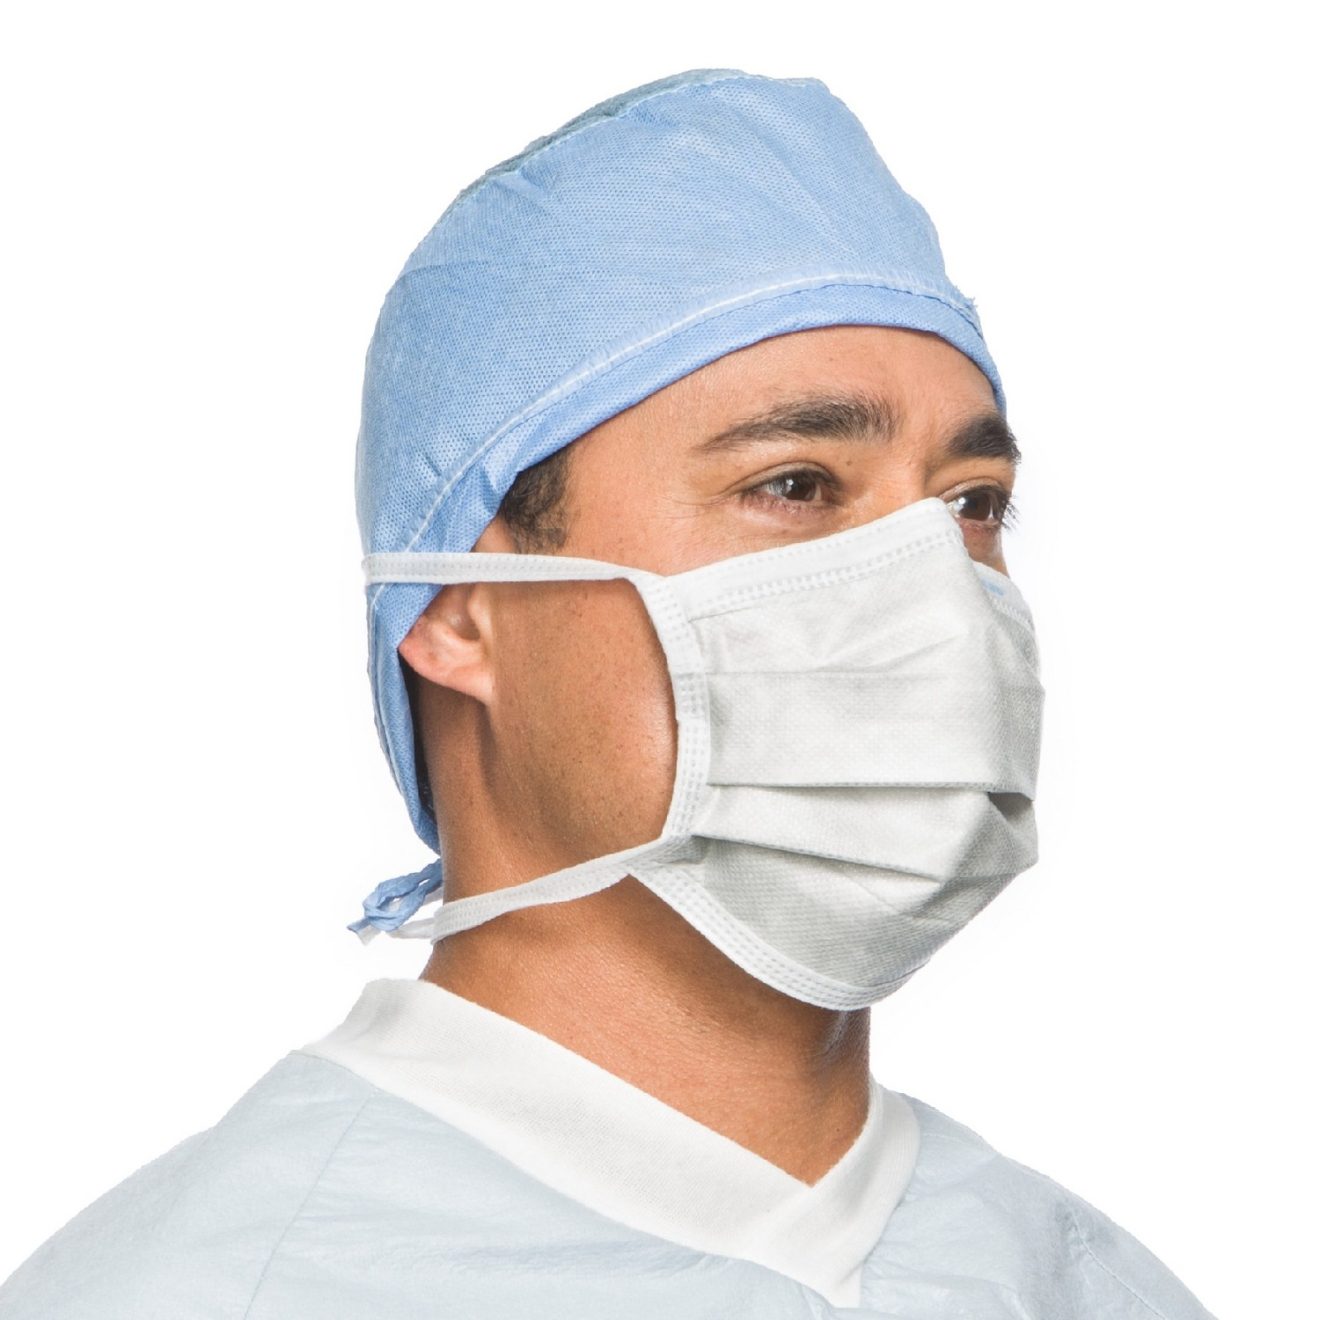 ماسک جراحي بنددار